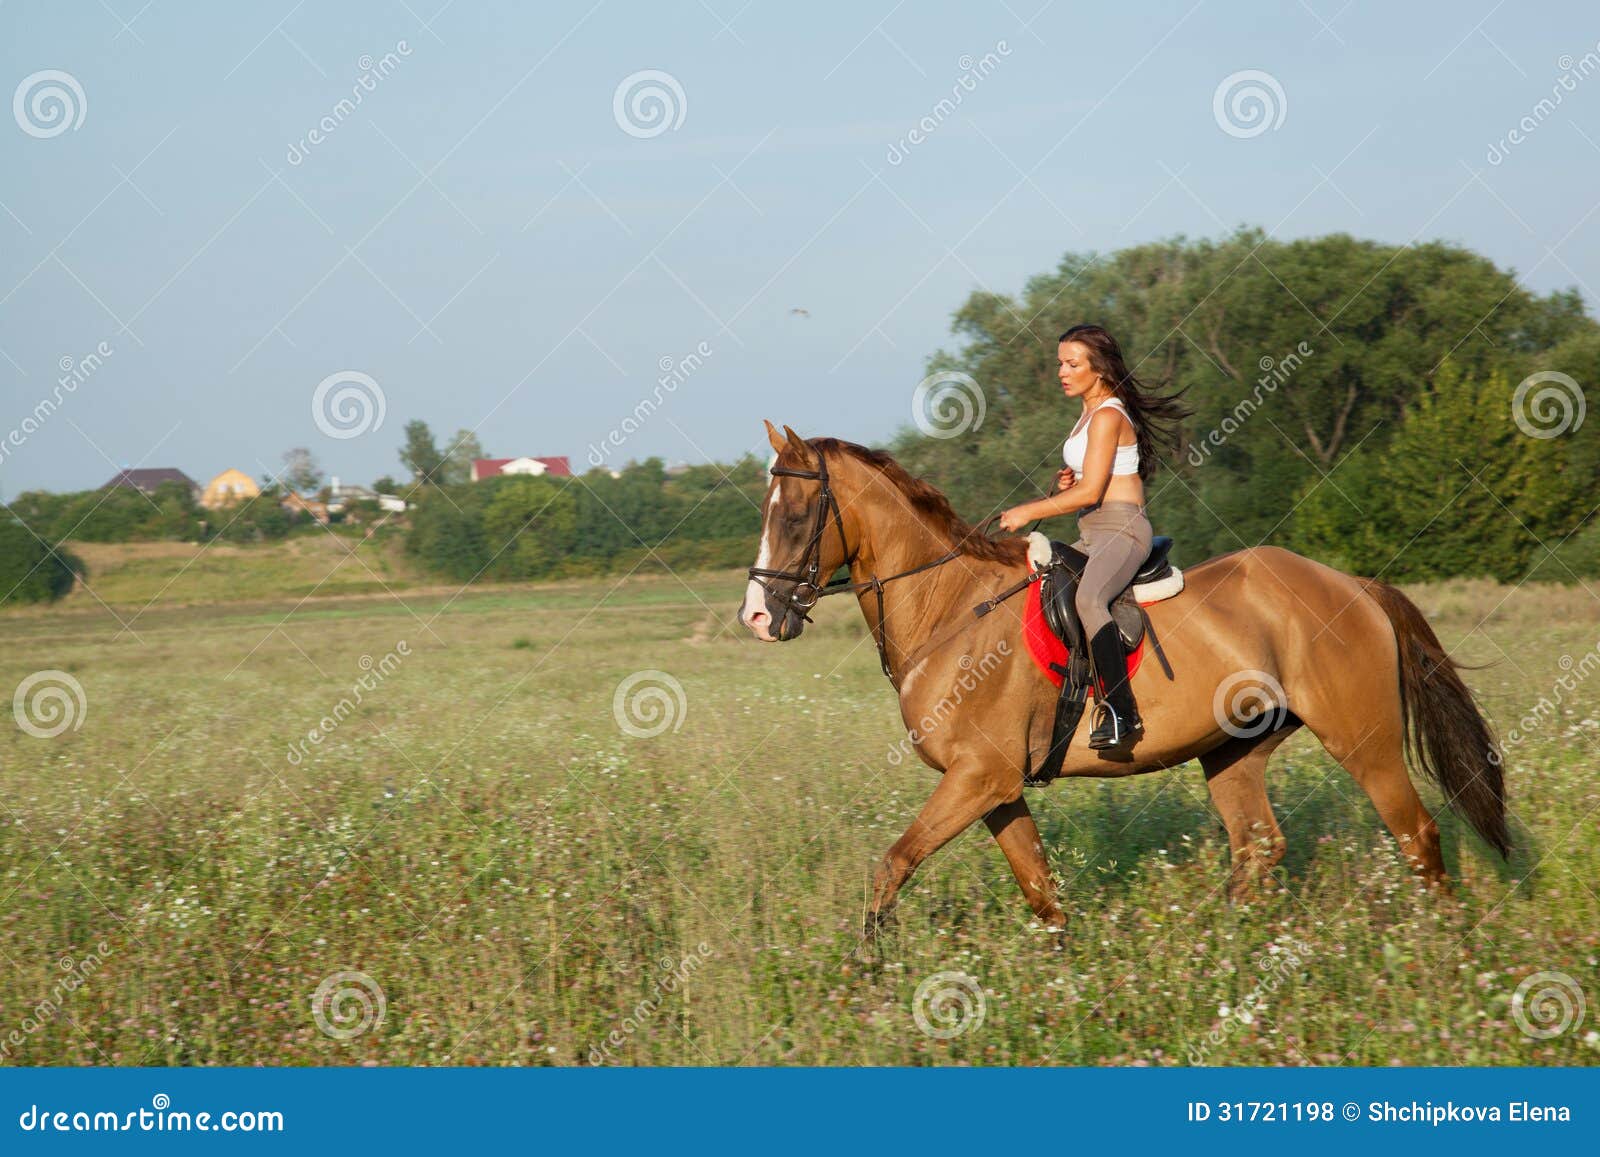 Мы вновь ехали на лошадях. Лошадь едет на лошади. Дворянка едет на лошади. Фото едем на лошади. Девушка быстро едет на лошади.